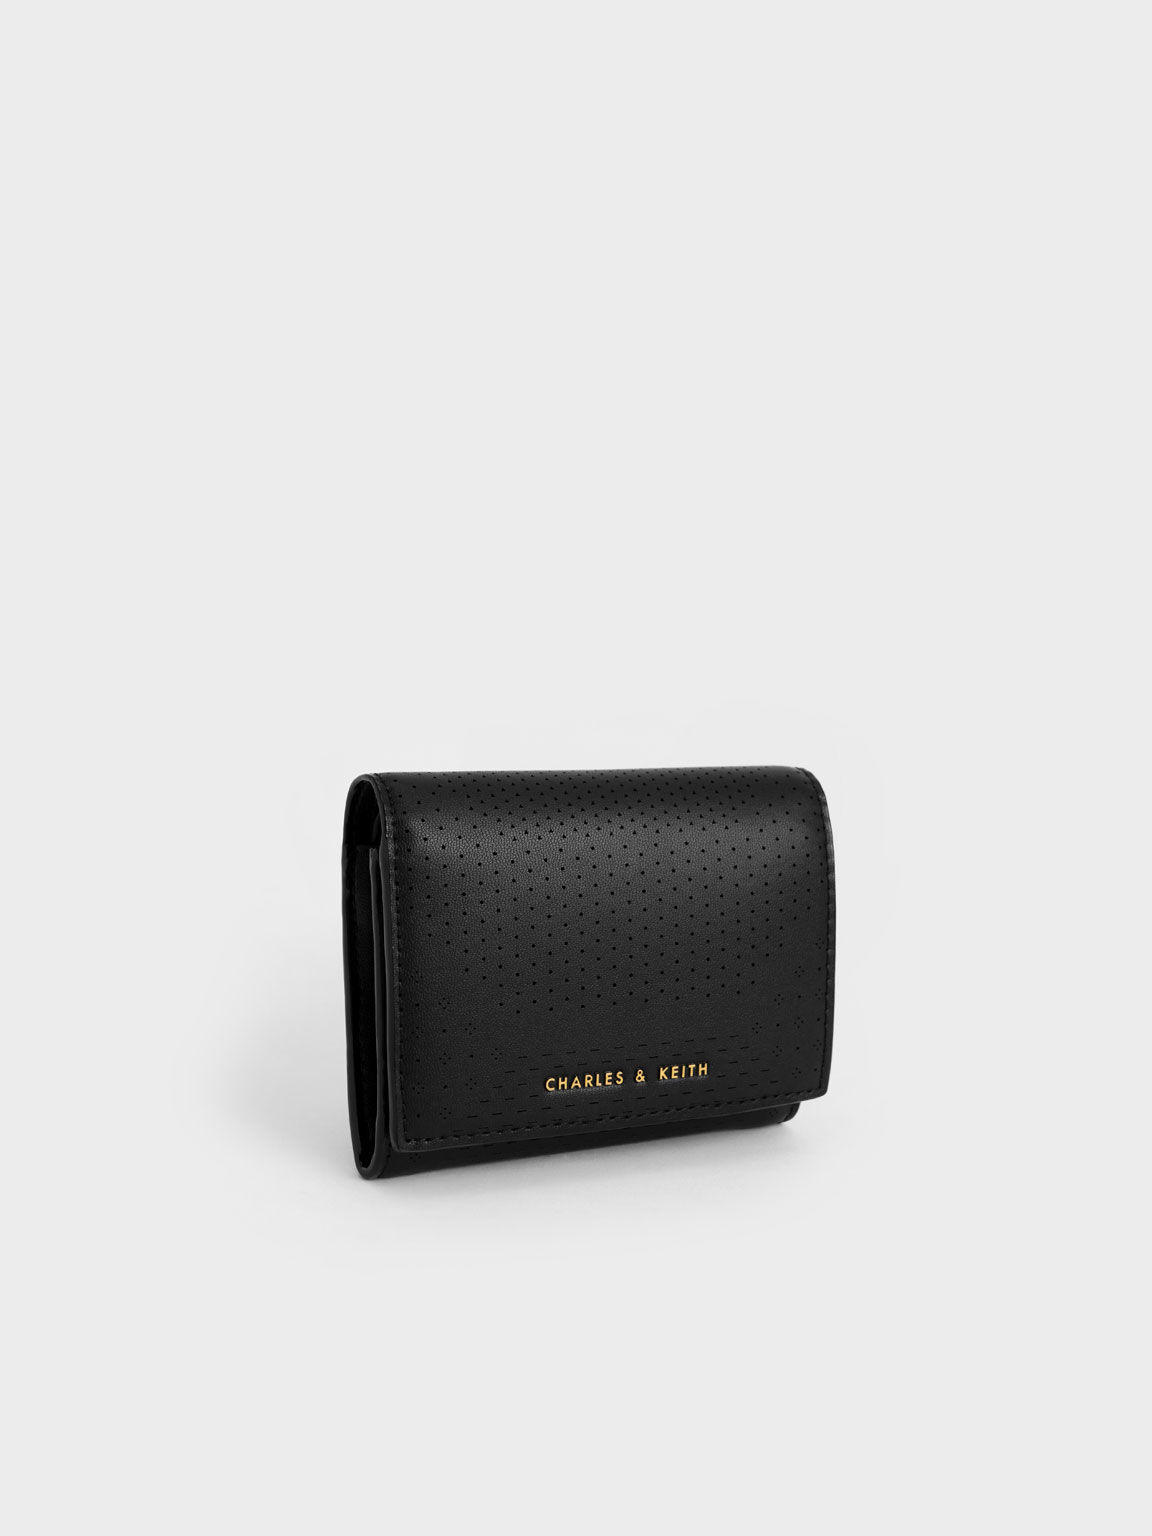 Lorain Perforated Wallet, Black, hi-res